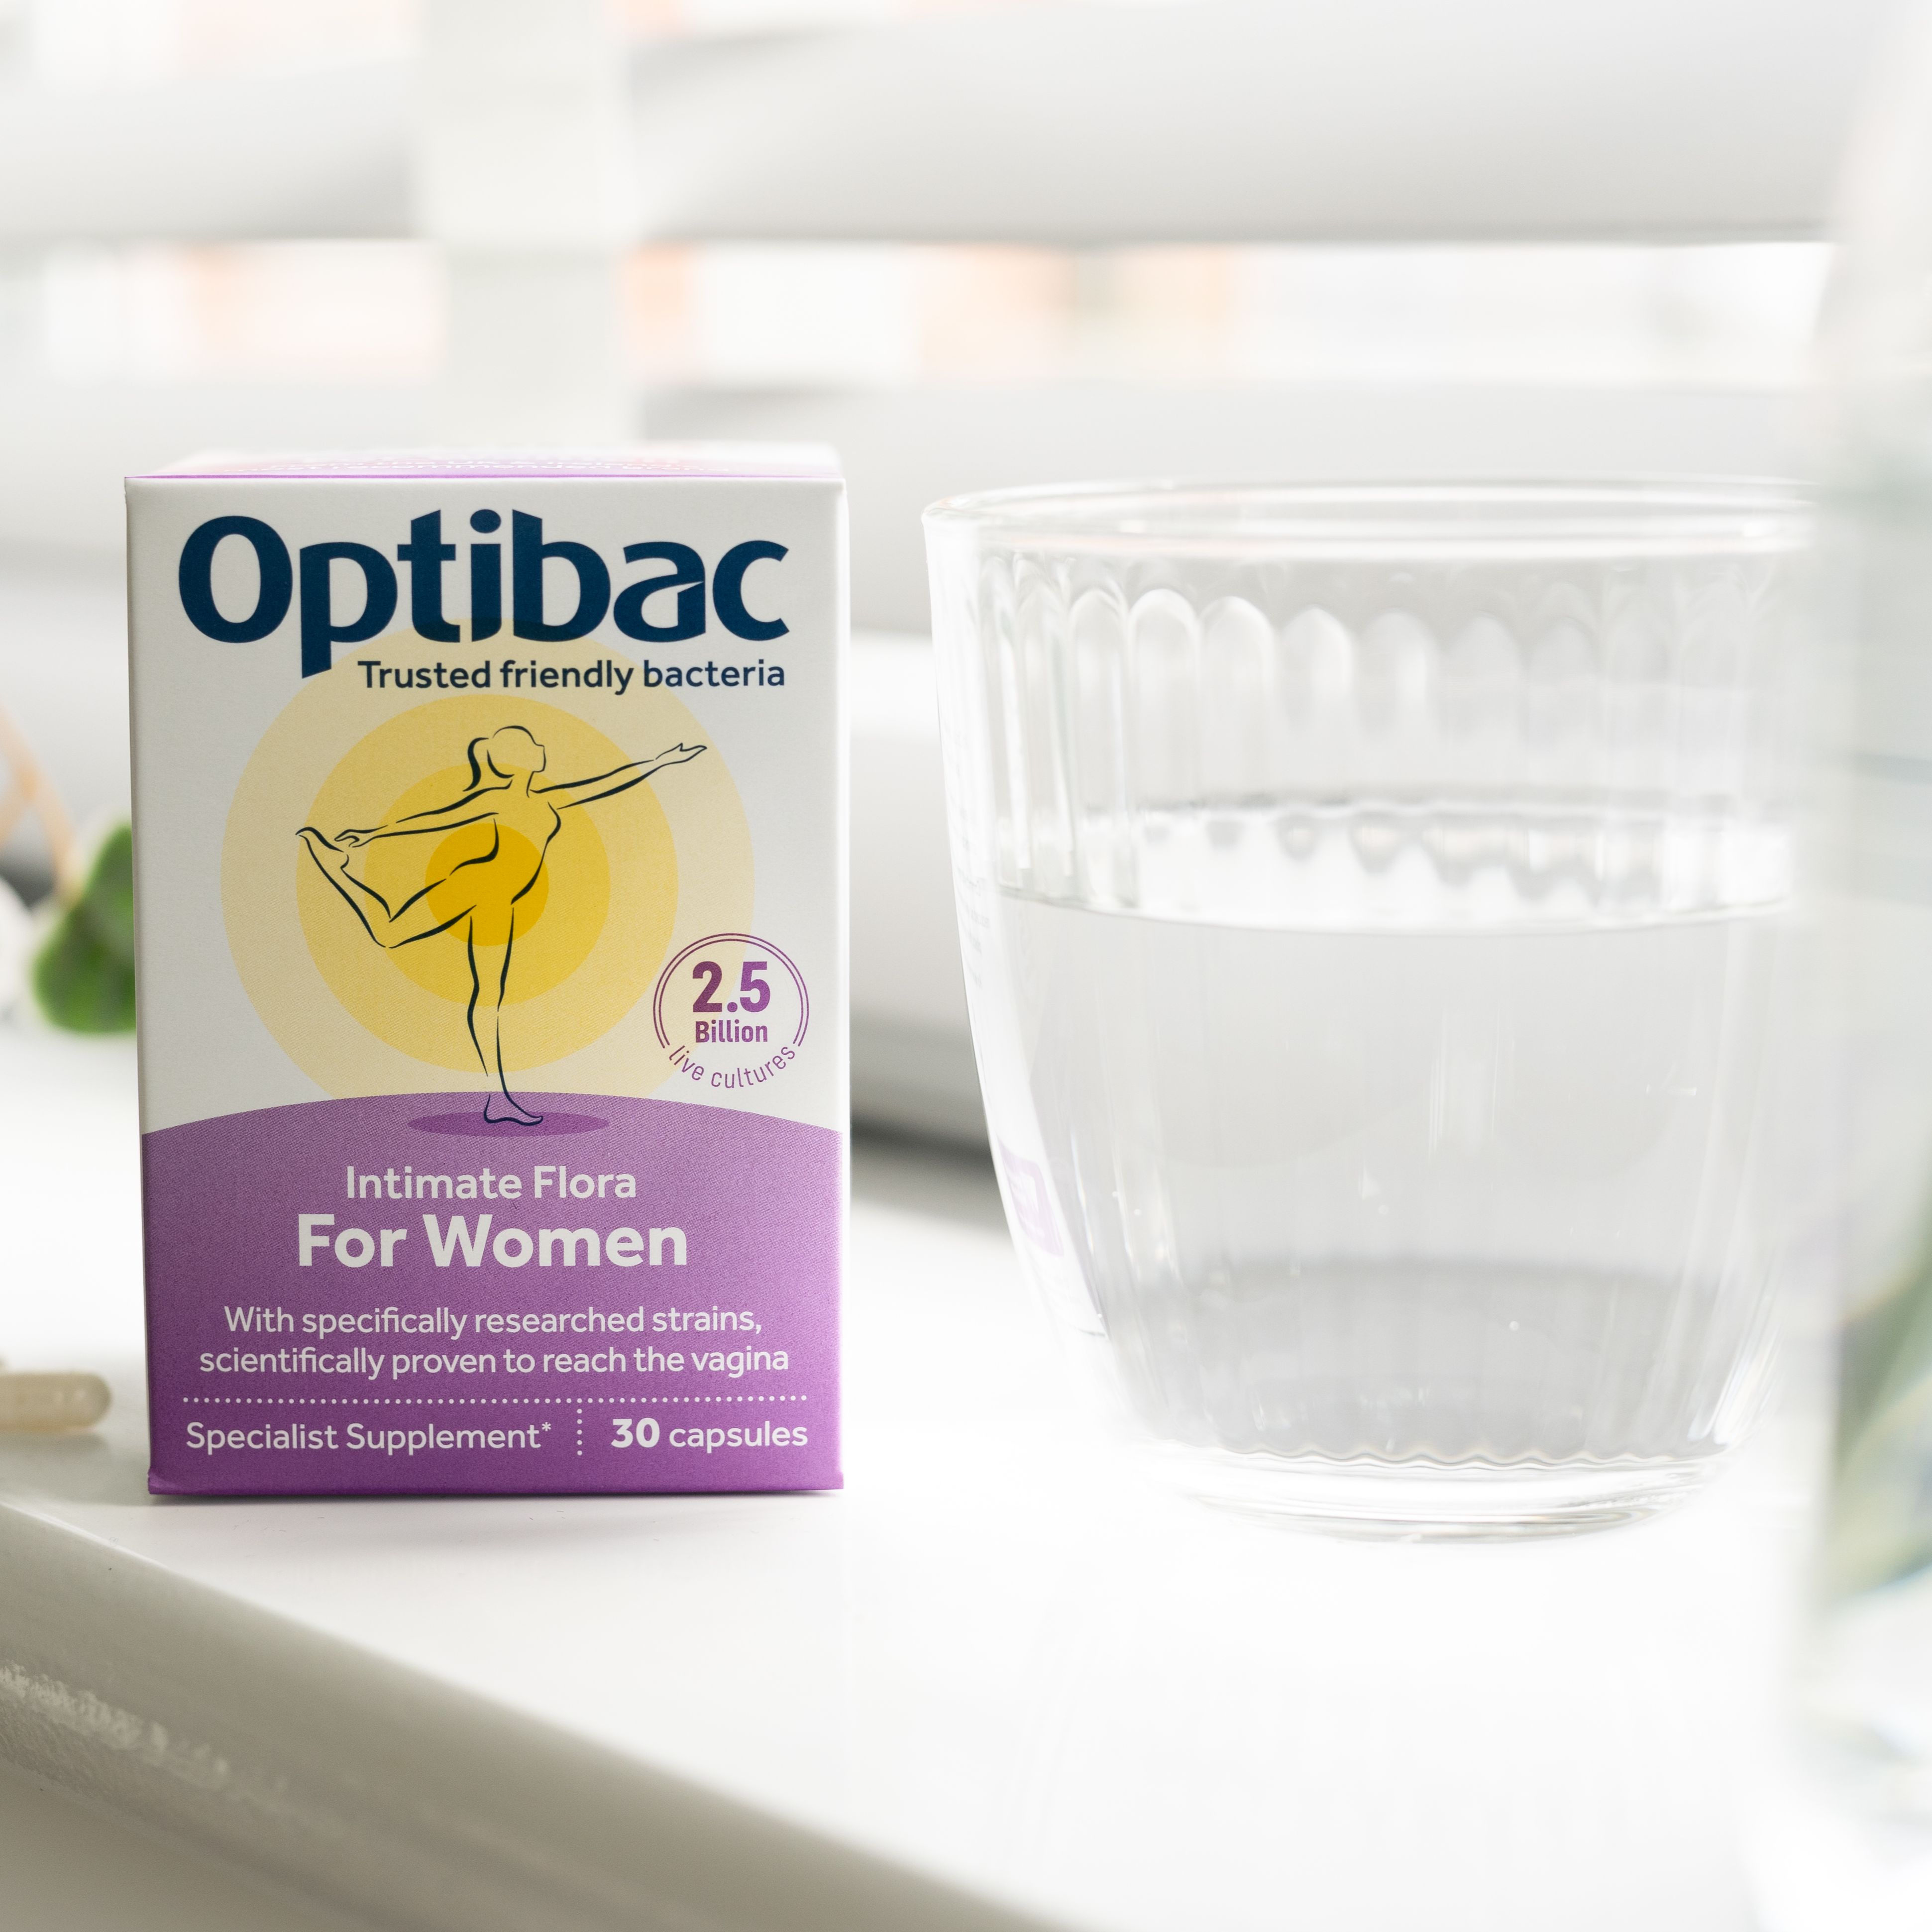 Men vi sinh dành cho phụ nữ OptiBac Probiotics For Women ngăn ngừa viêm nhiễm vùng kín - Hàng chính...